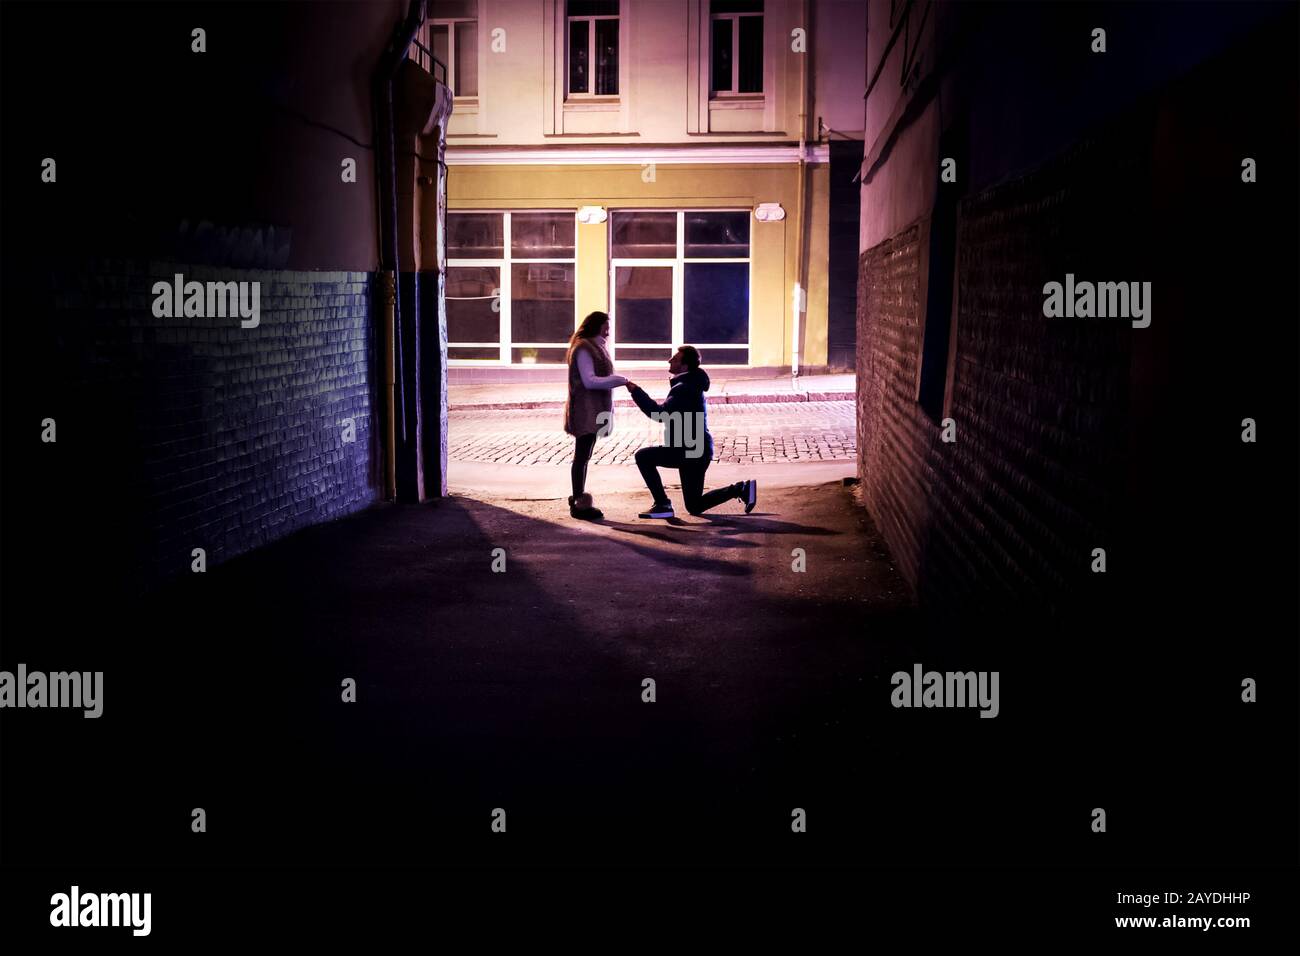 l'homme fait une proposition de mariage à une femme s'agenouillant dans la lumière à la fin d'une ruelle sombre Banque D'Images